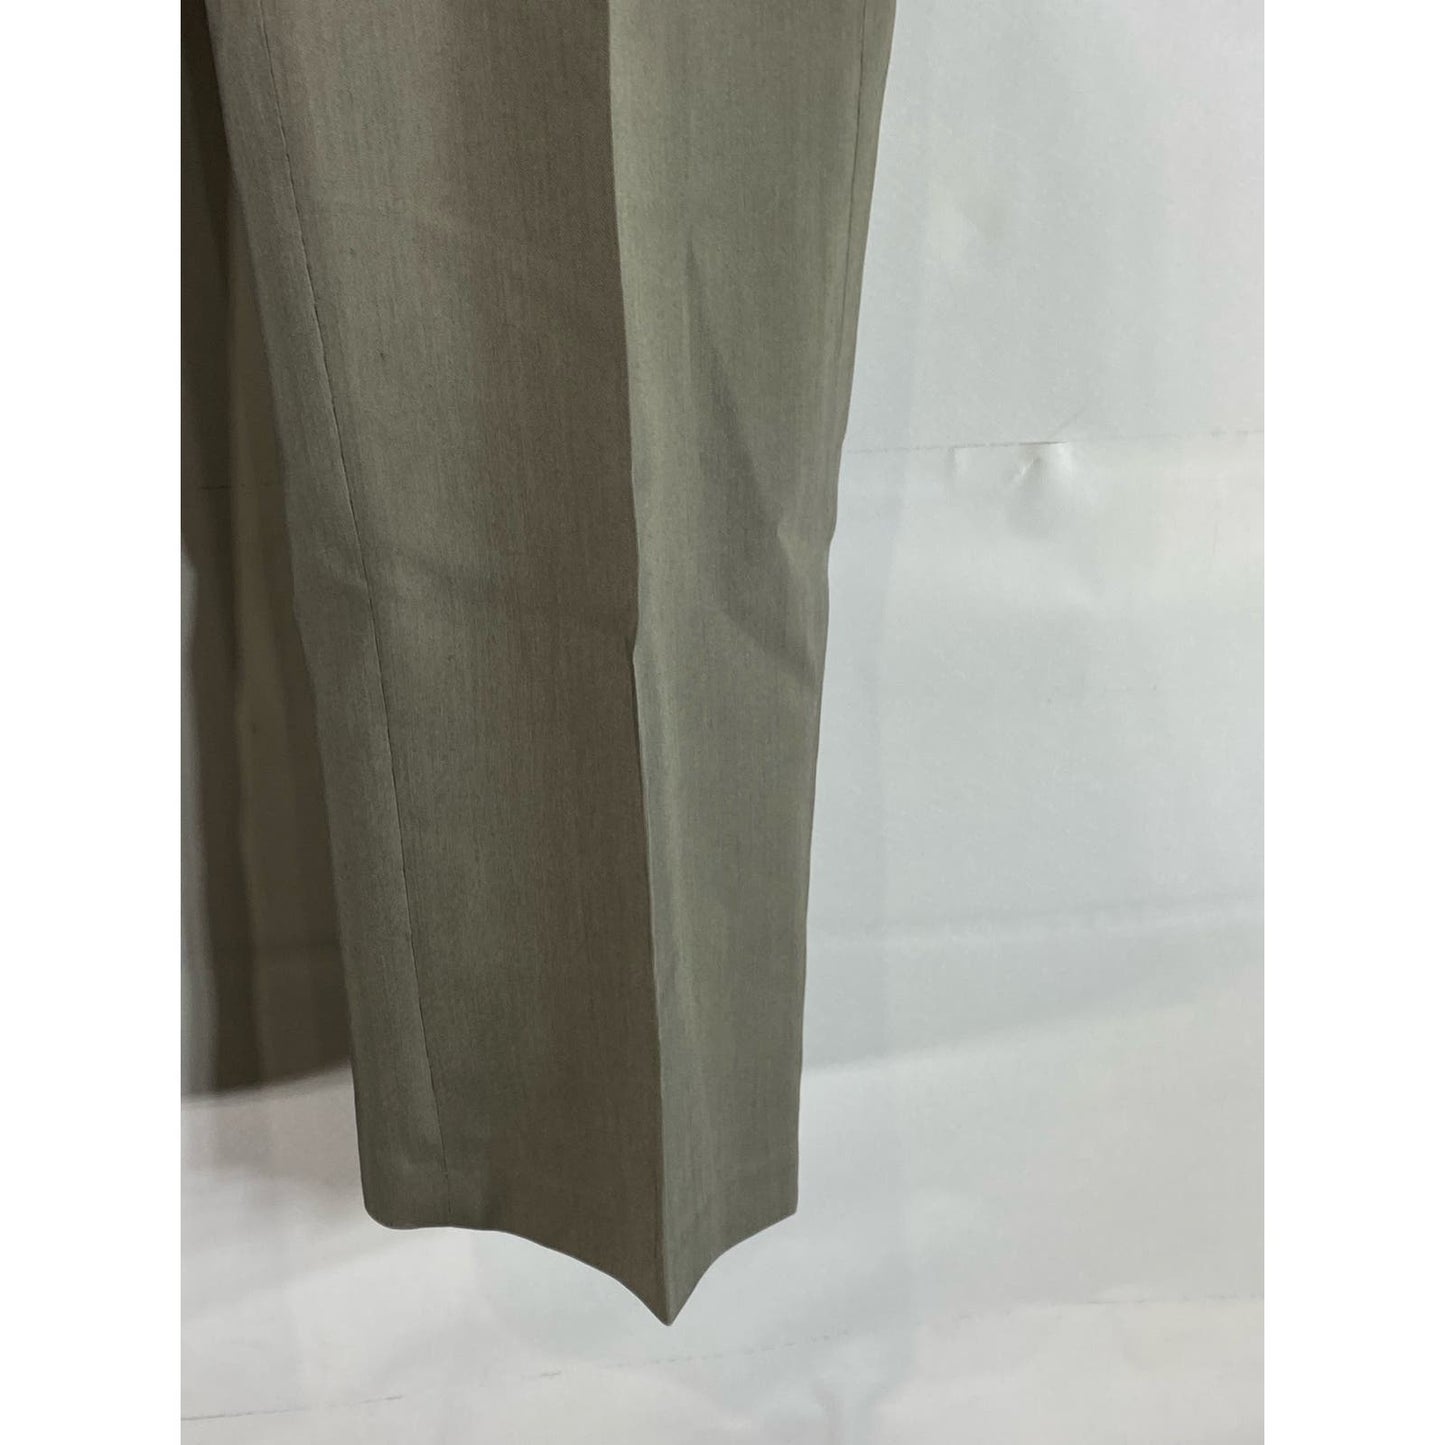 PRONTO UOMO Men's Gray Modern-Fit Flat Front Dress Pants SZ 30X30